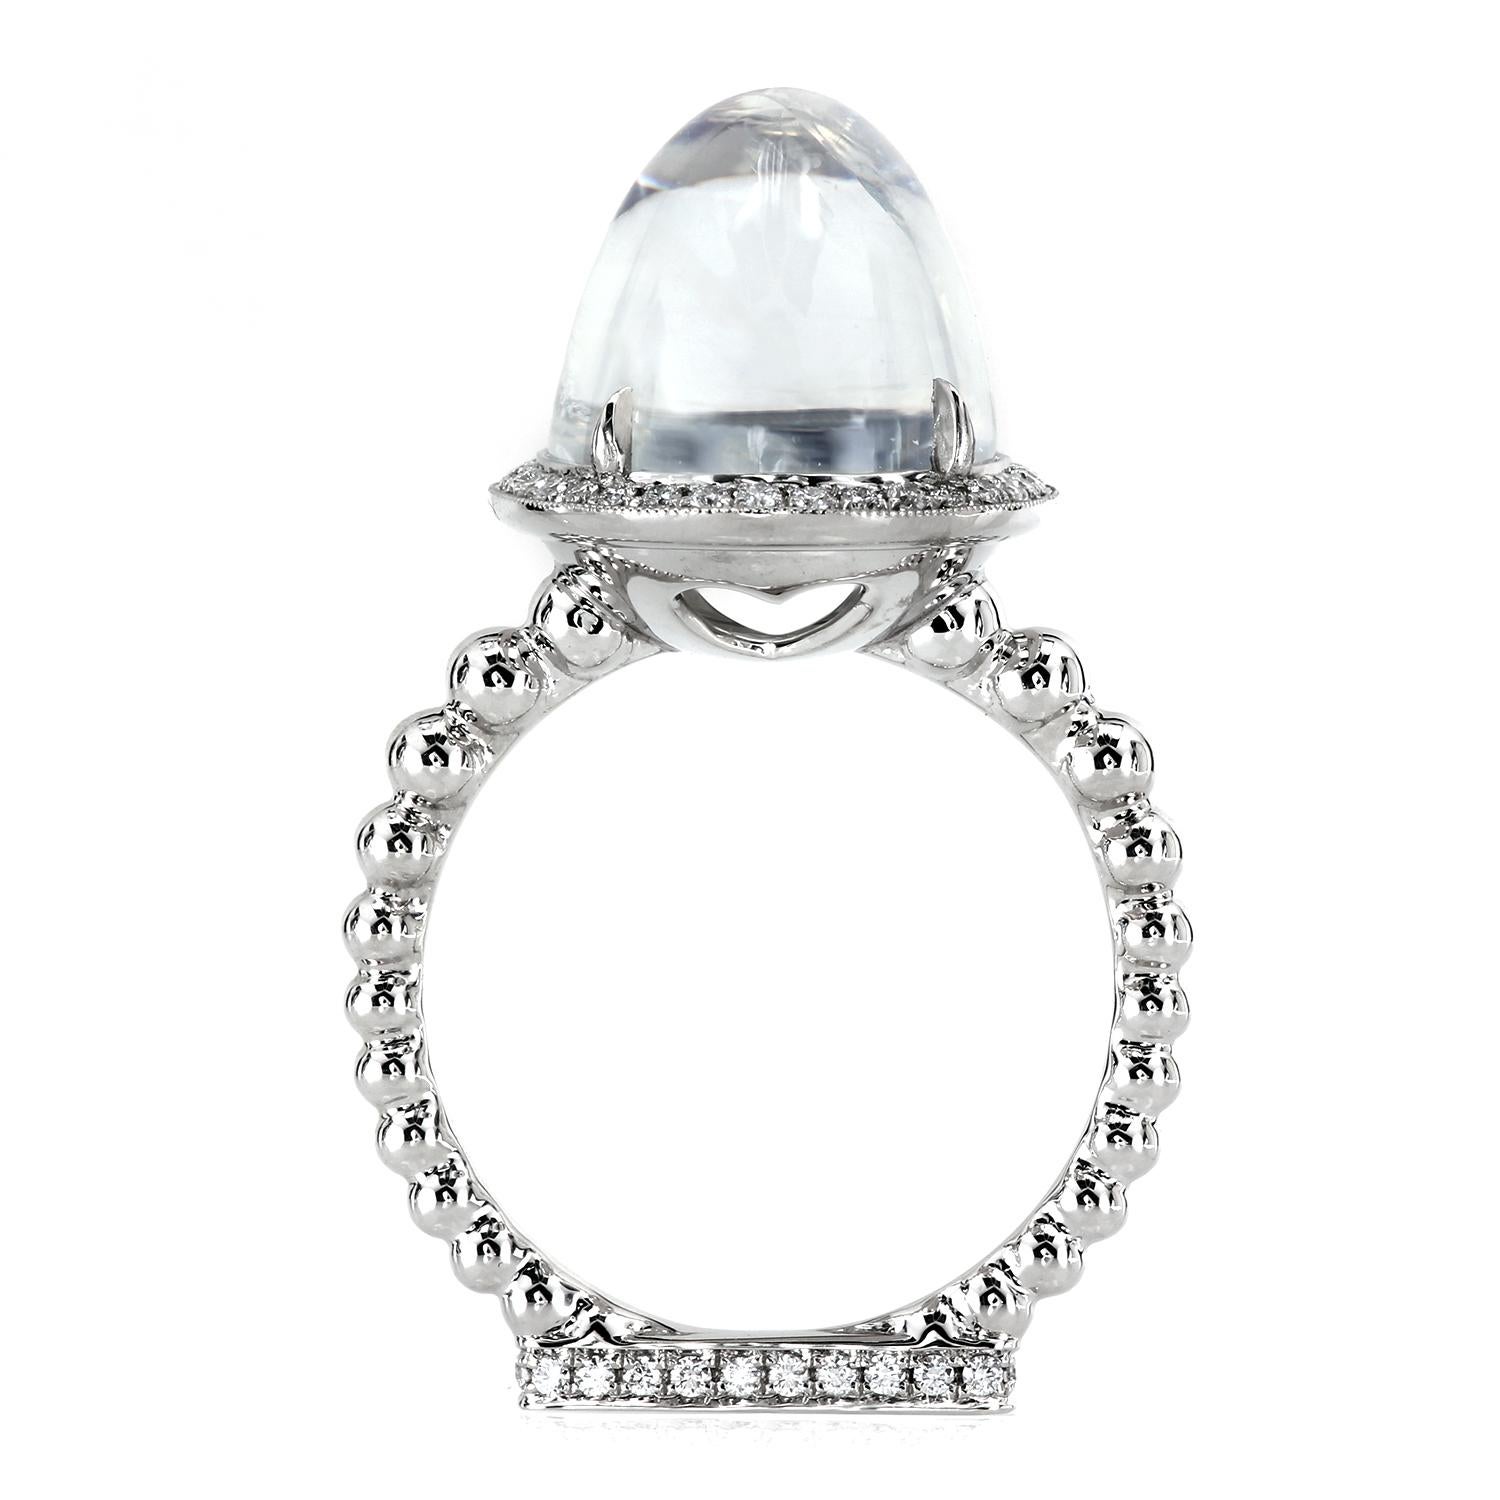 Artisan Leon Mege 13.22 Carat Moonstone Cab Ring with Diamonds in Platinum